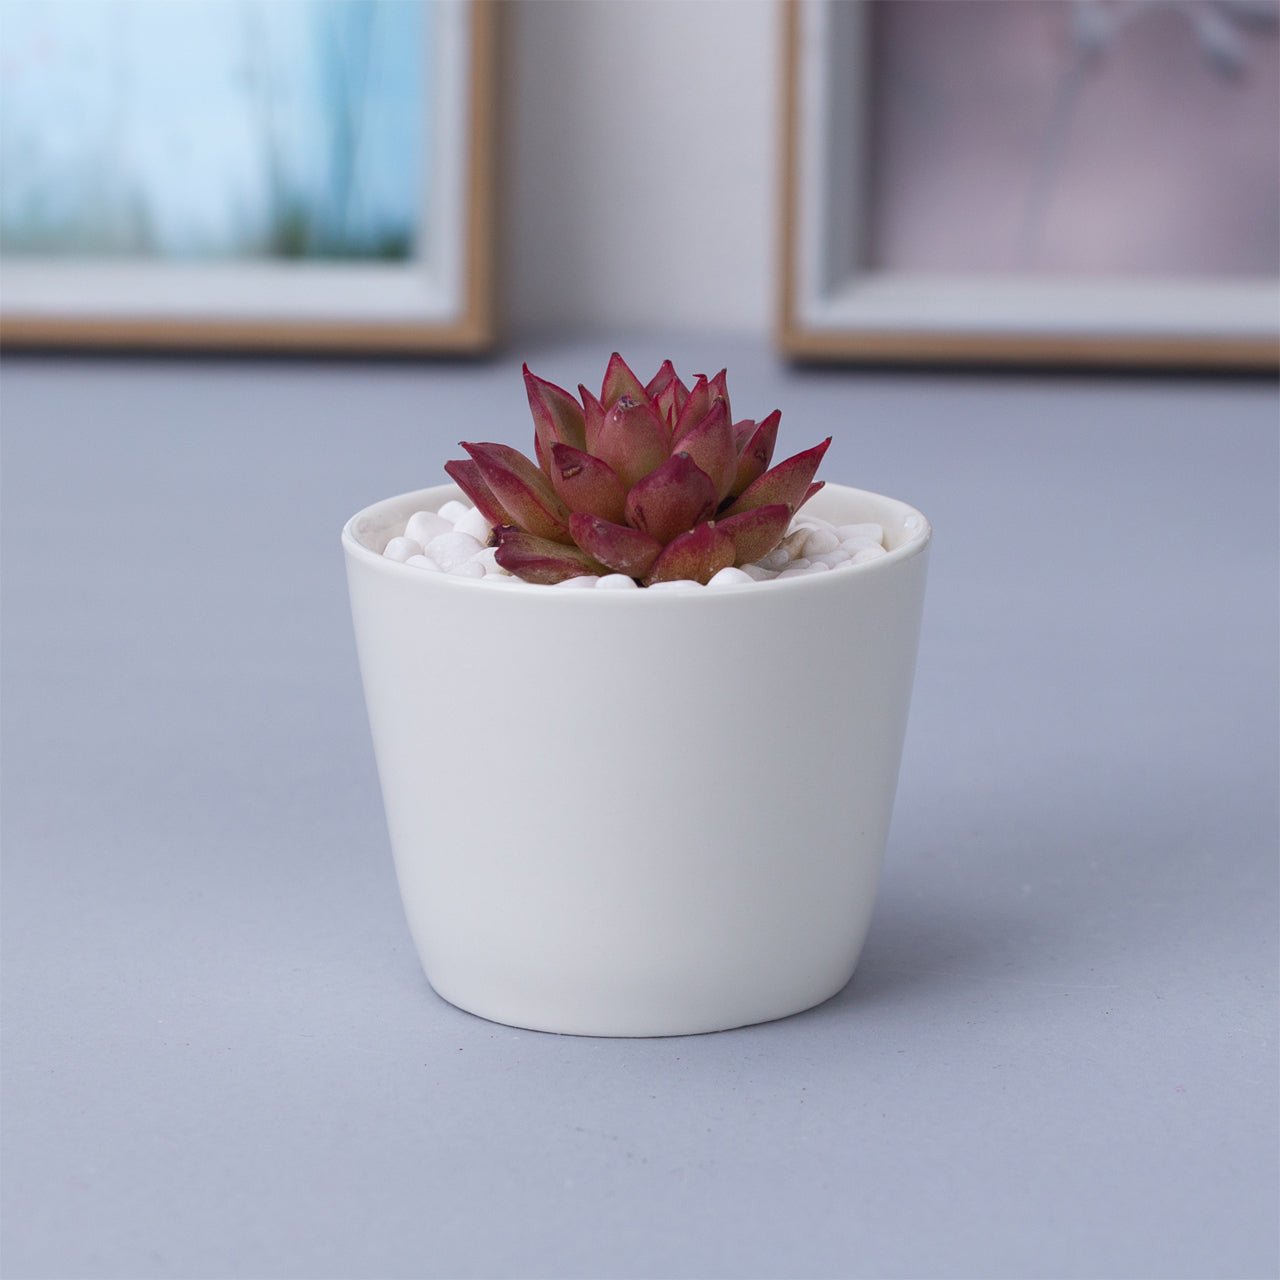 Token Size Cone Shaped Porcelain Ceramic Desk Pot - Pots For Plants